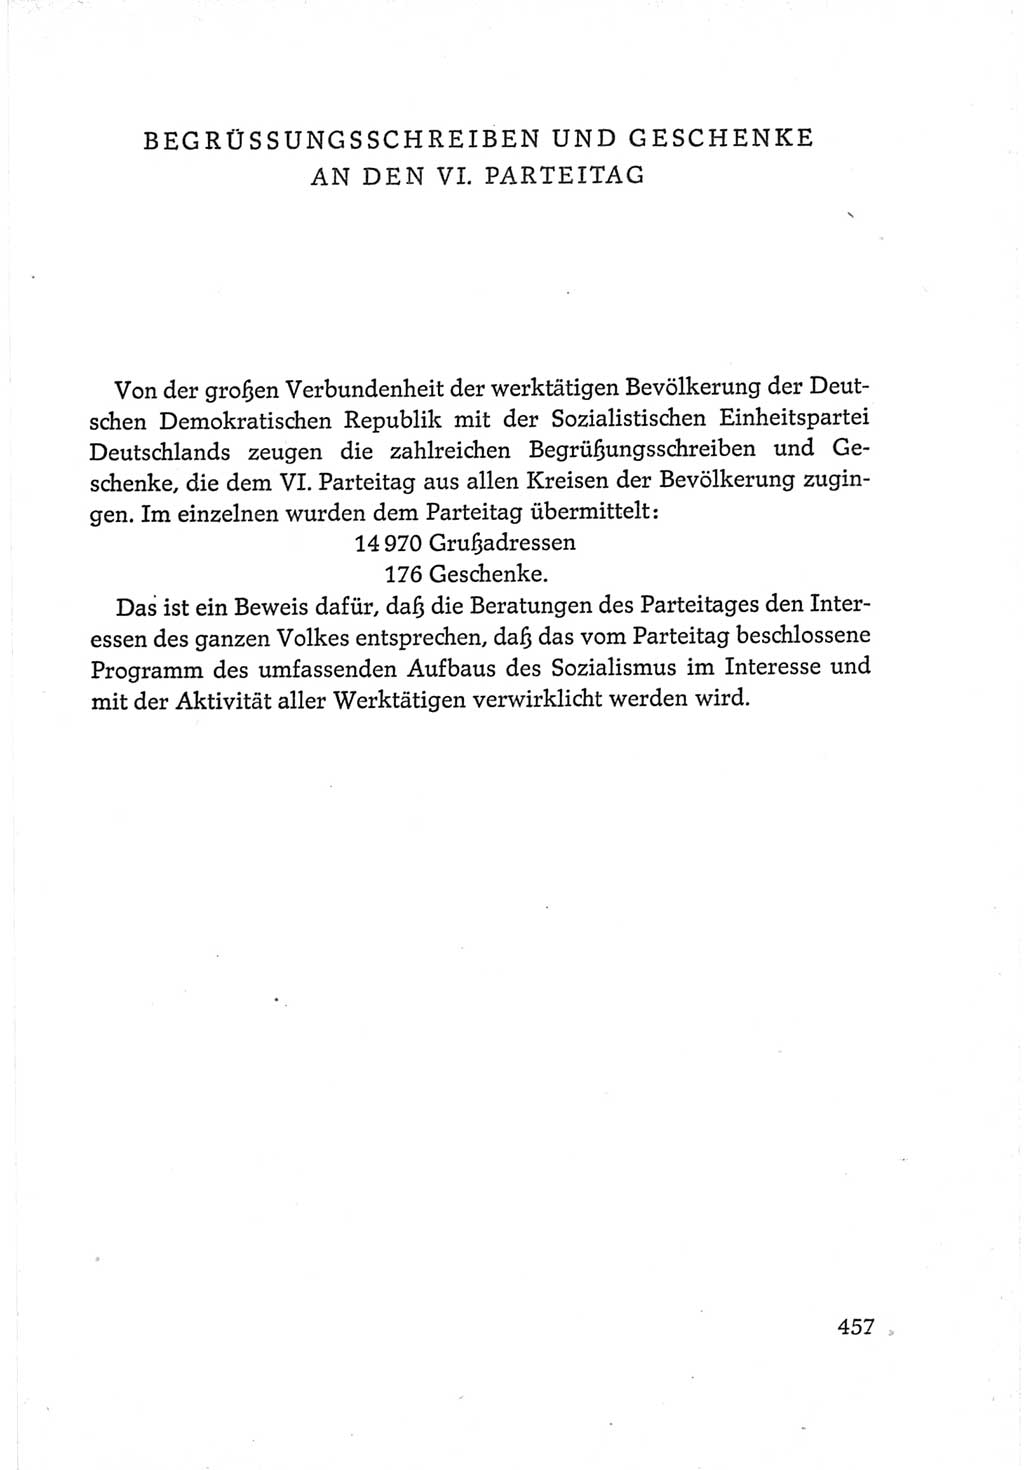 Protokoll der Verhandlungen des Ⅵ. Parteitages der Sozialistischen Einheitspartei Deutschlands (SED) [Deutsche Demokratische Republik (DDR)] 1963, Band Ⅳ, Seite 457 (Prot. Verh. Ⅵ. PT SED DDR 1963, Bd. Ⅳ, S. 457)